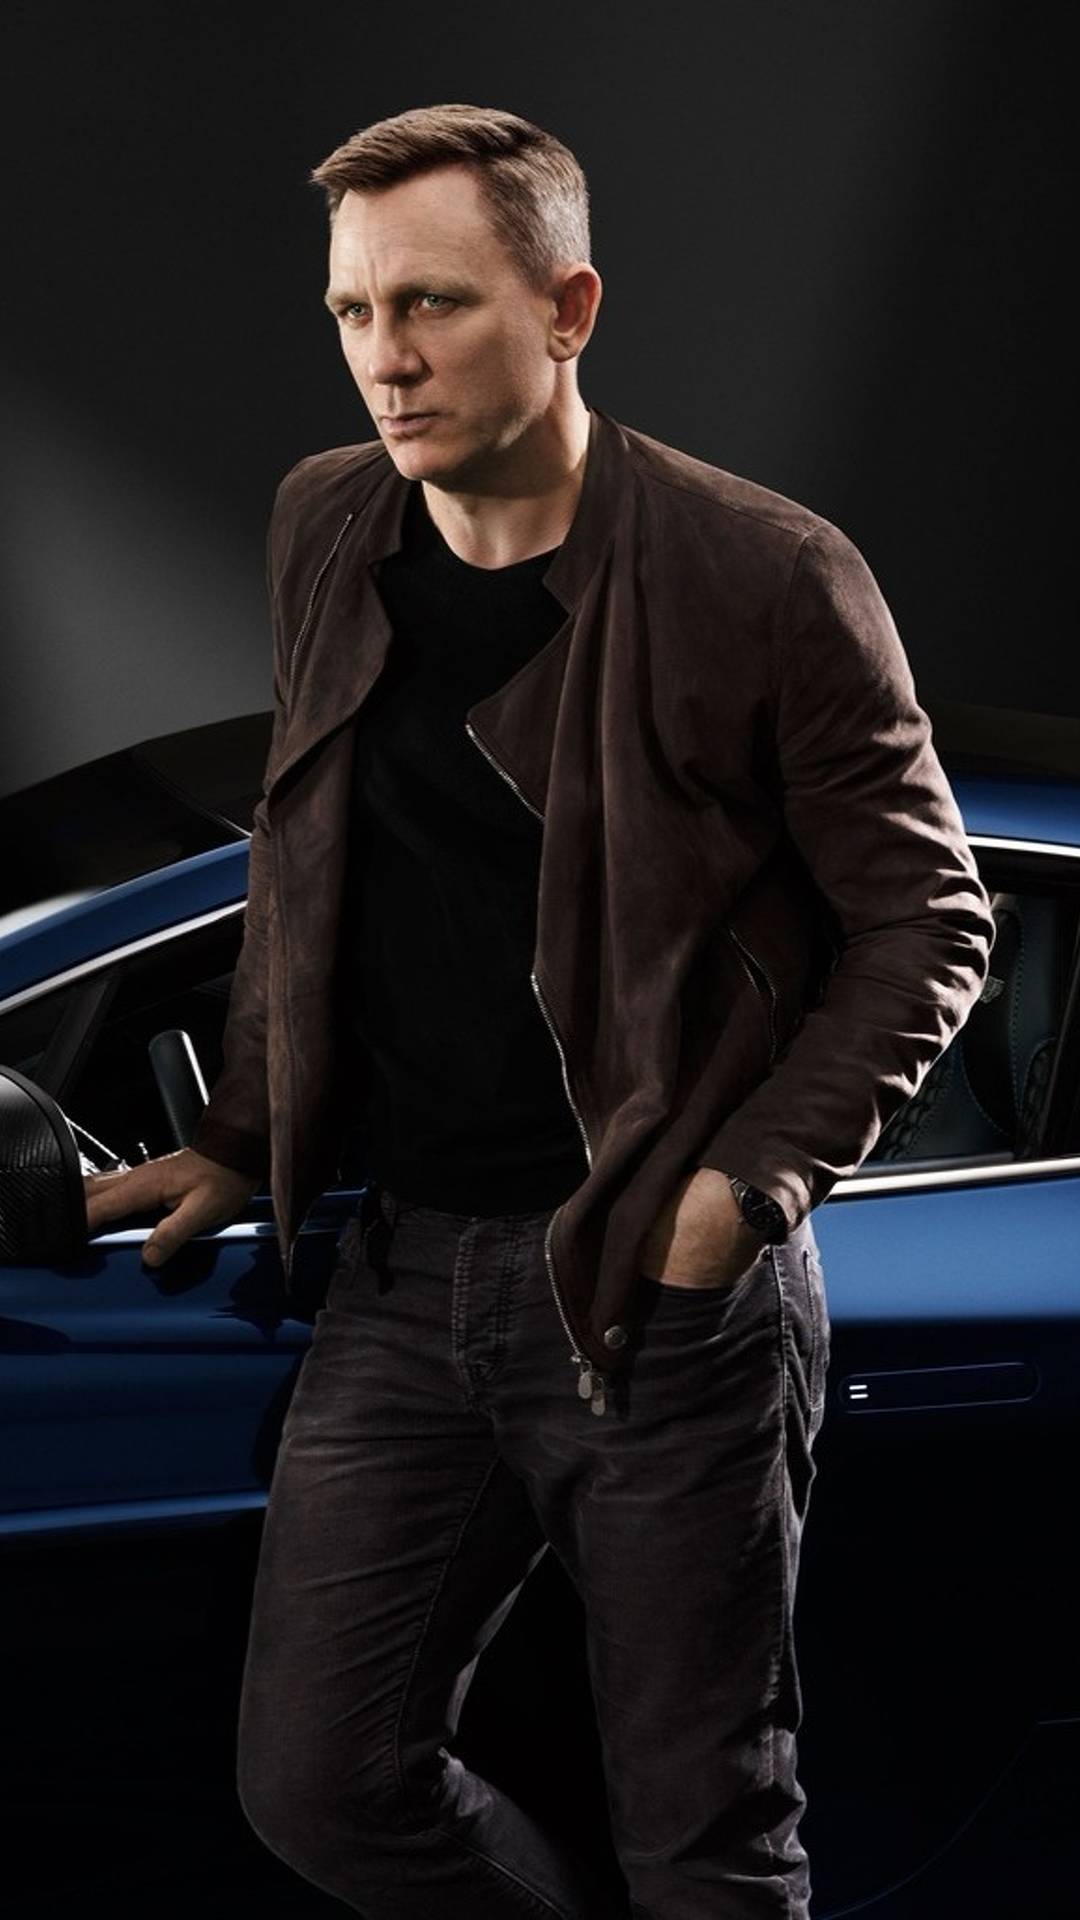 ممثل جيمس بوند يعرض سيارته أستون مارتن فانكويش للبيع في مزاد علني 1